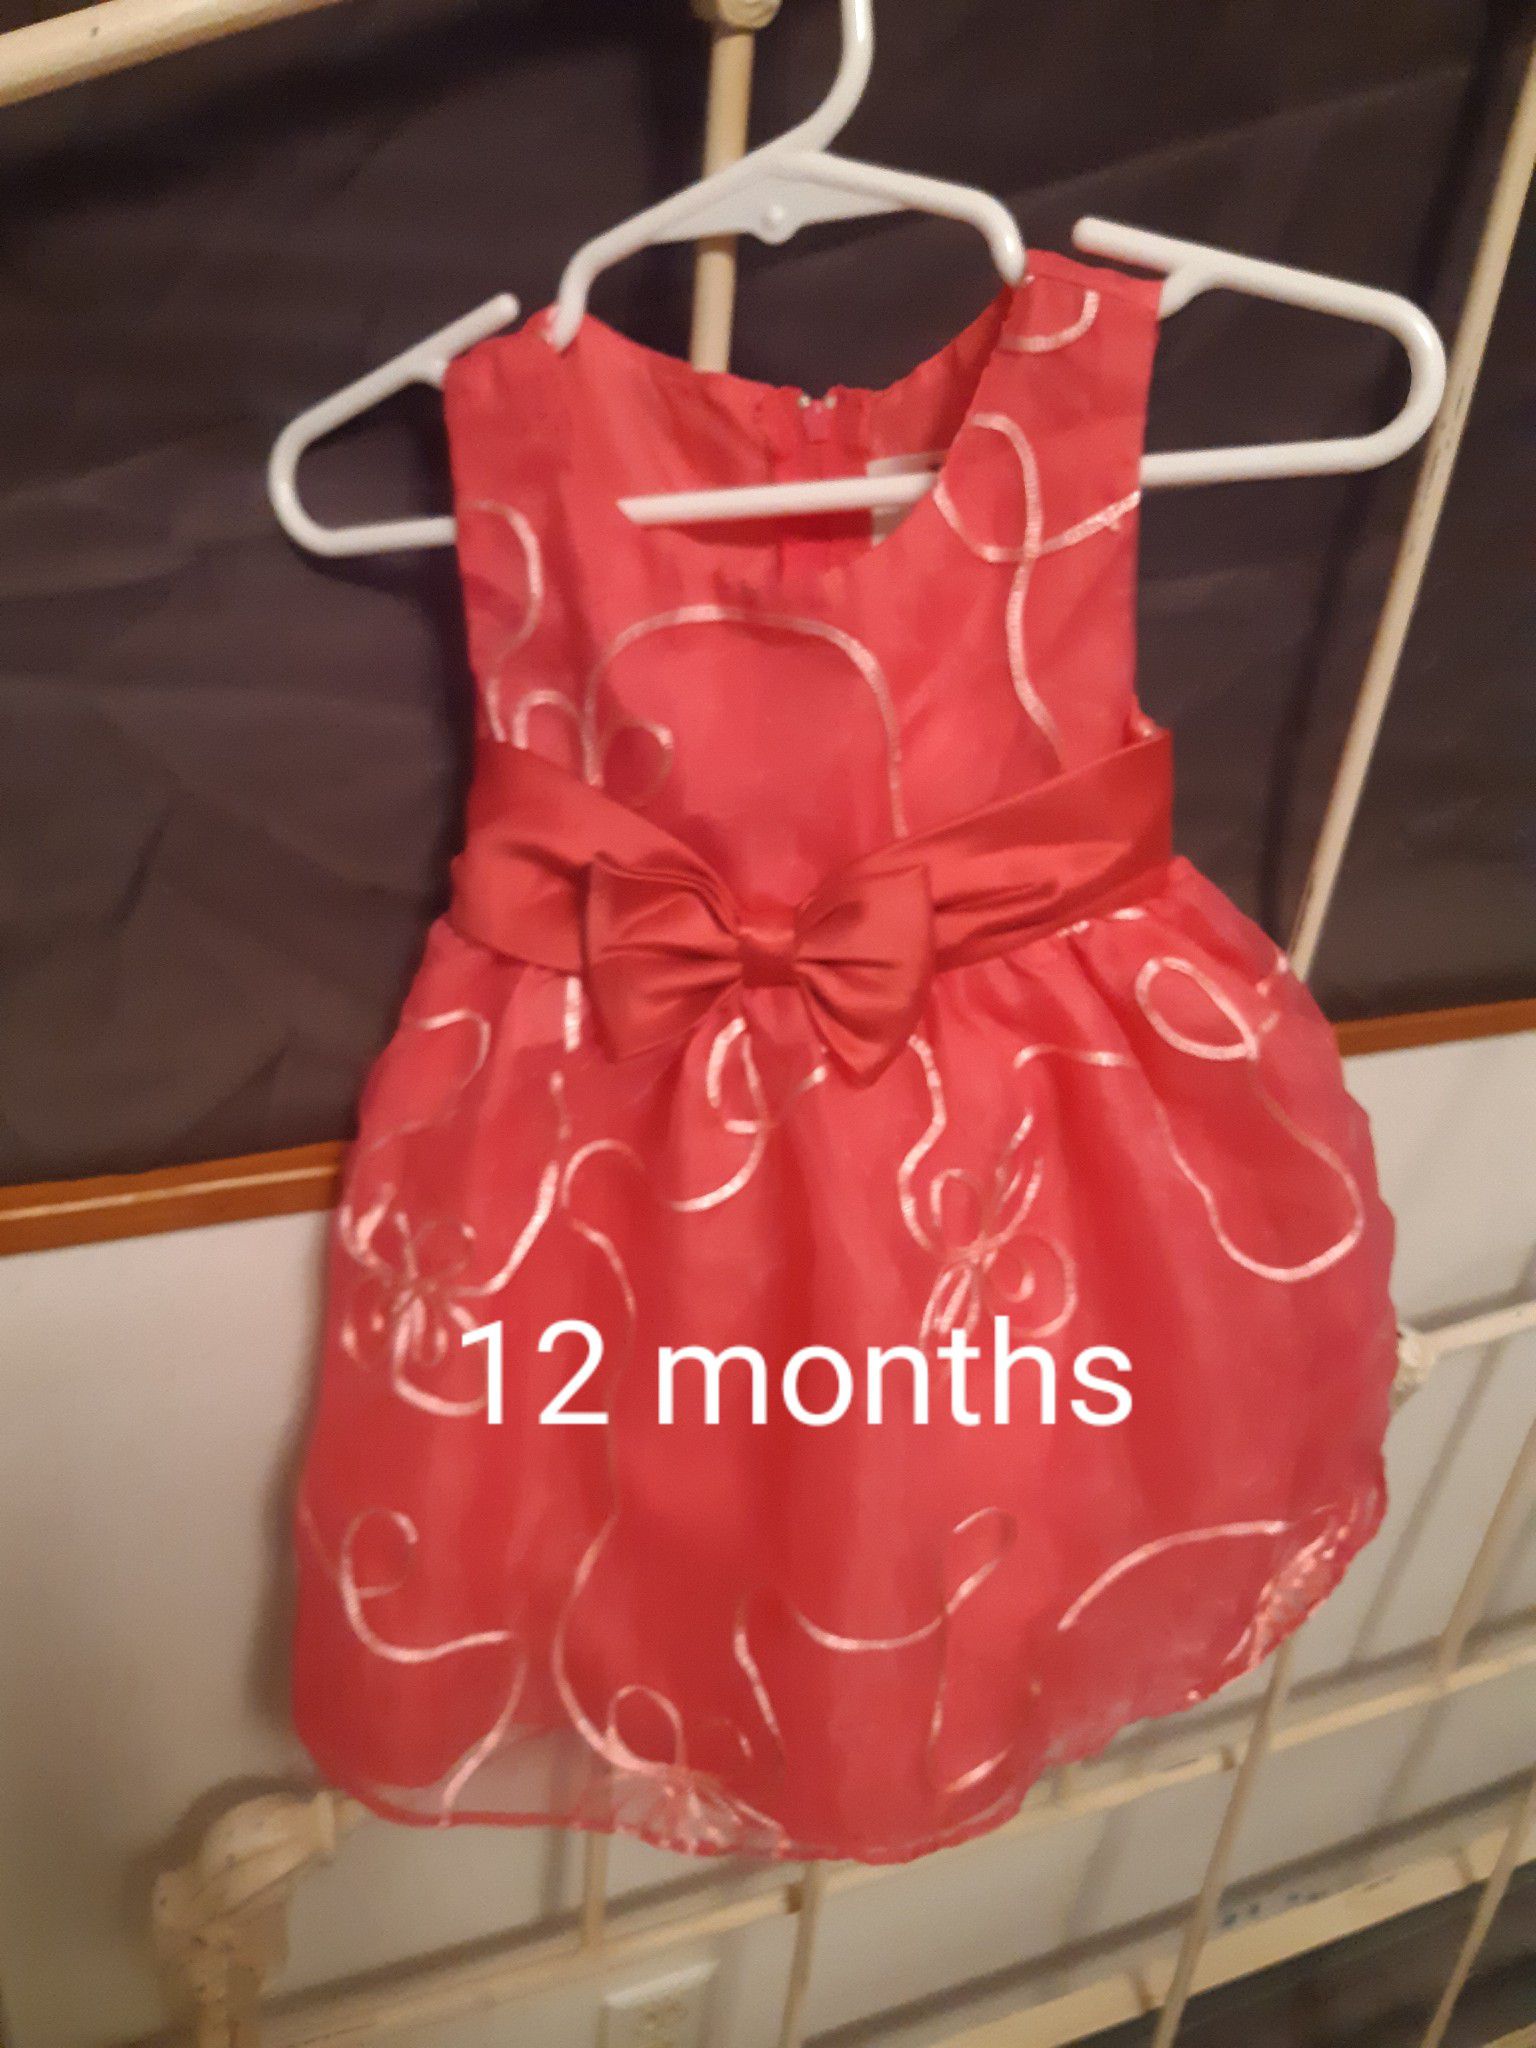 12 month PINK dress, not orange, bad pic.